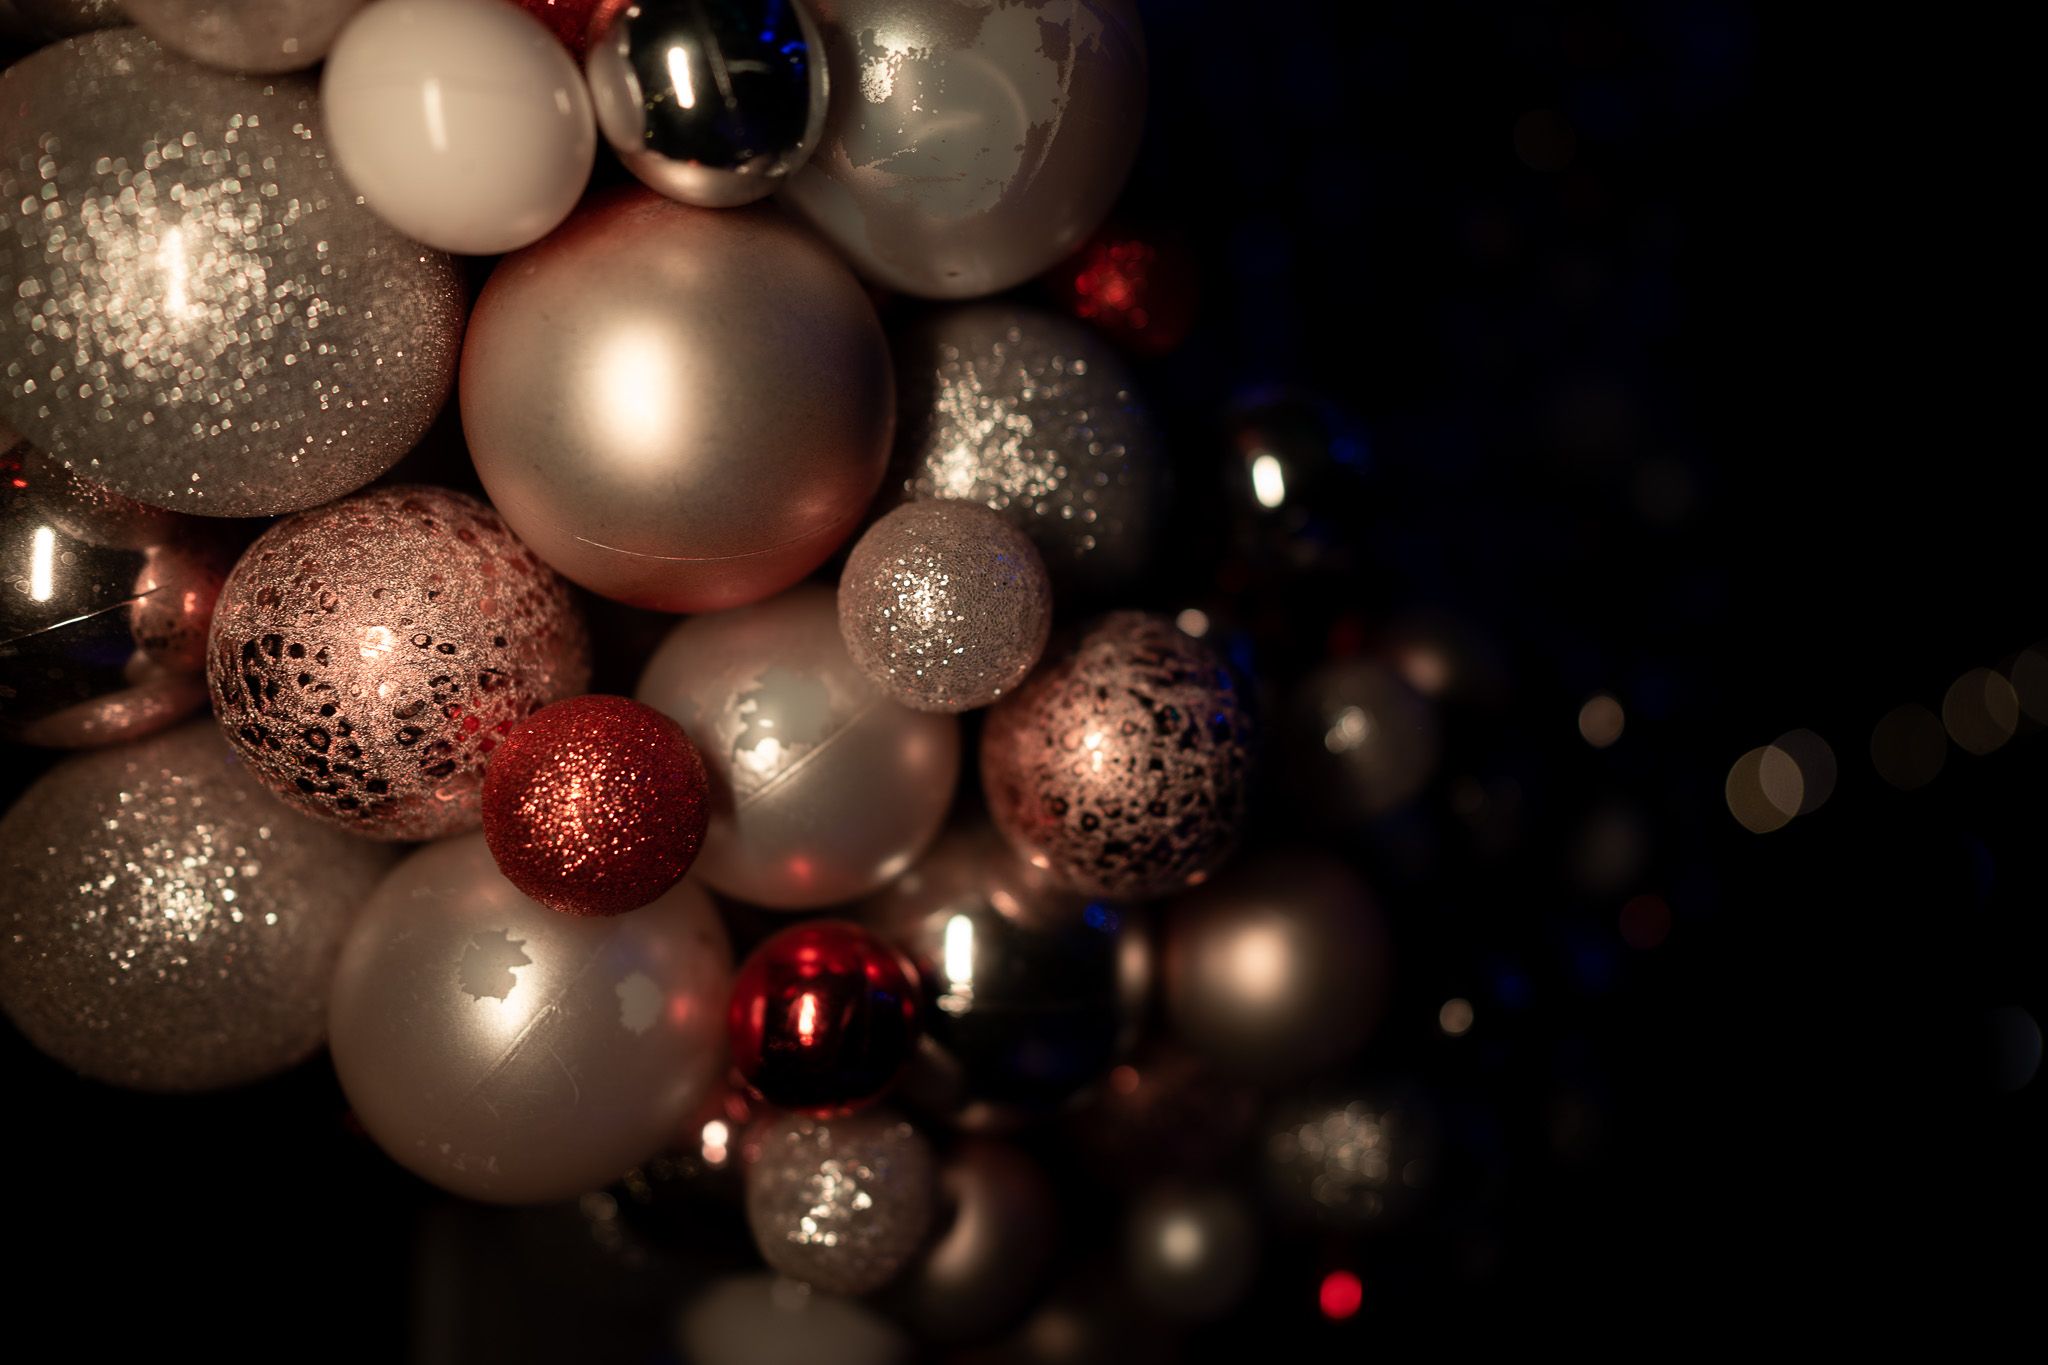  Weihnachtskugeln Hintergrundbild 2048x1365. Low Light Fotografie: 5 Tipps Für Fotos Im Dunkeln